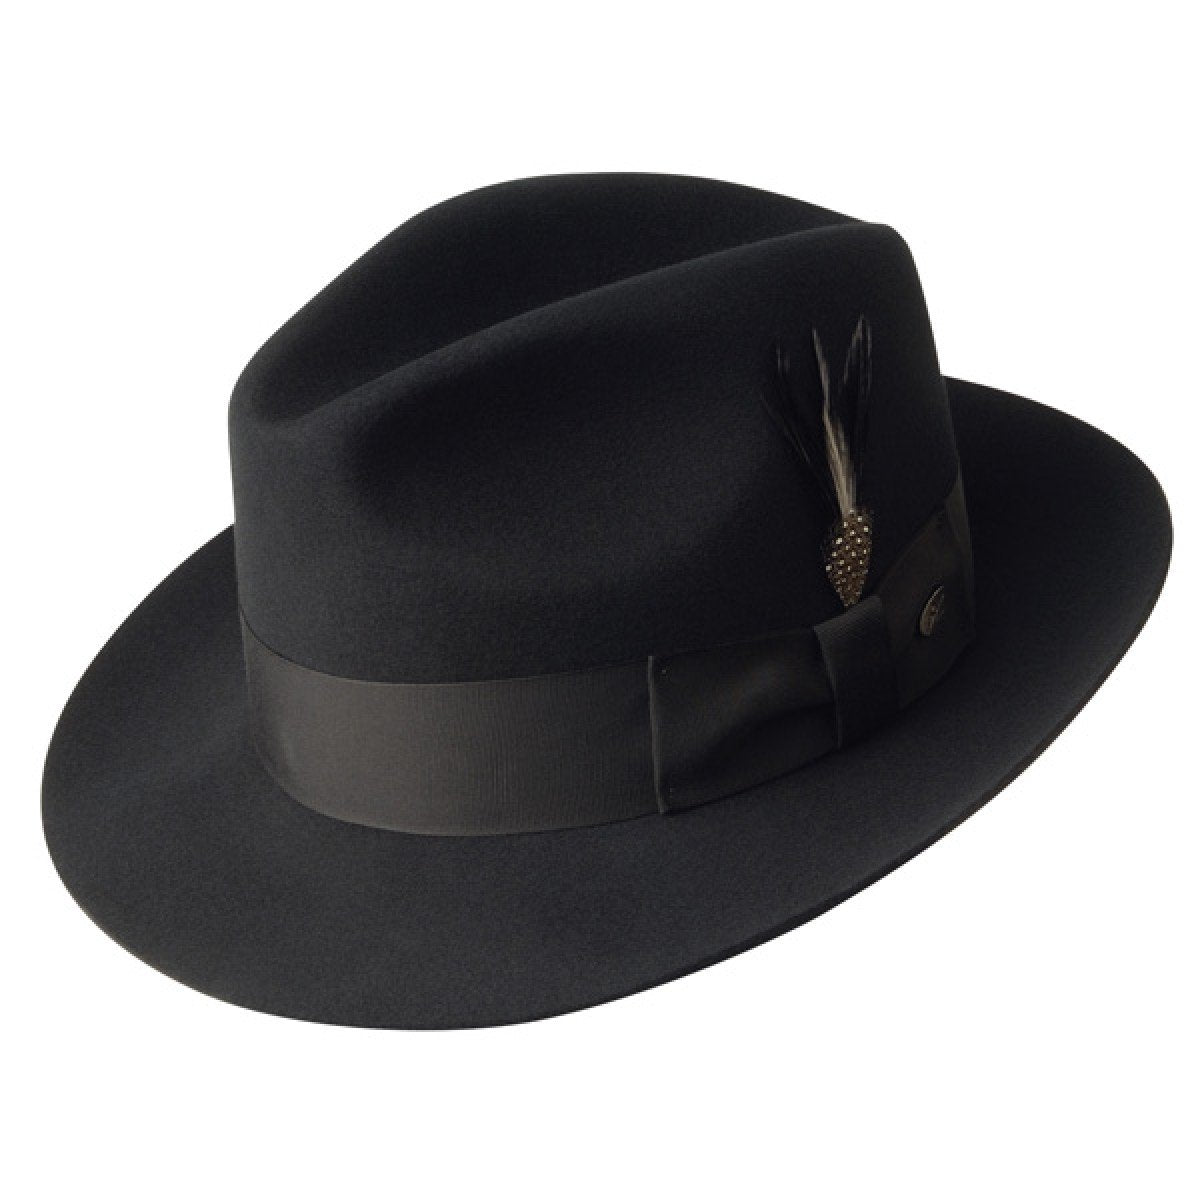 03 - Combo chemise et chapeau